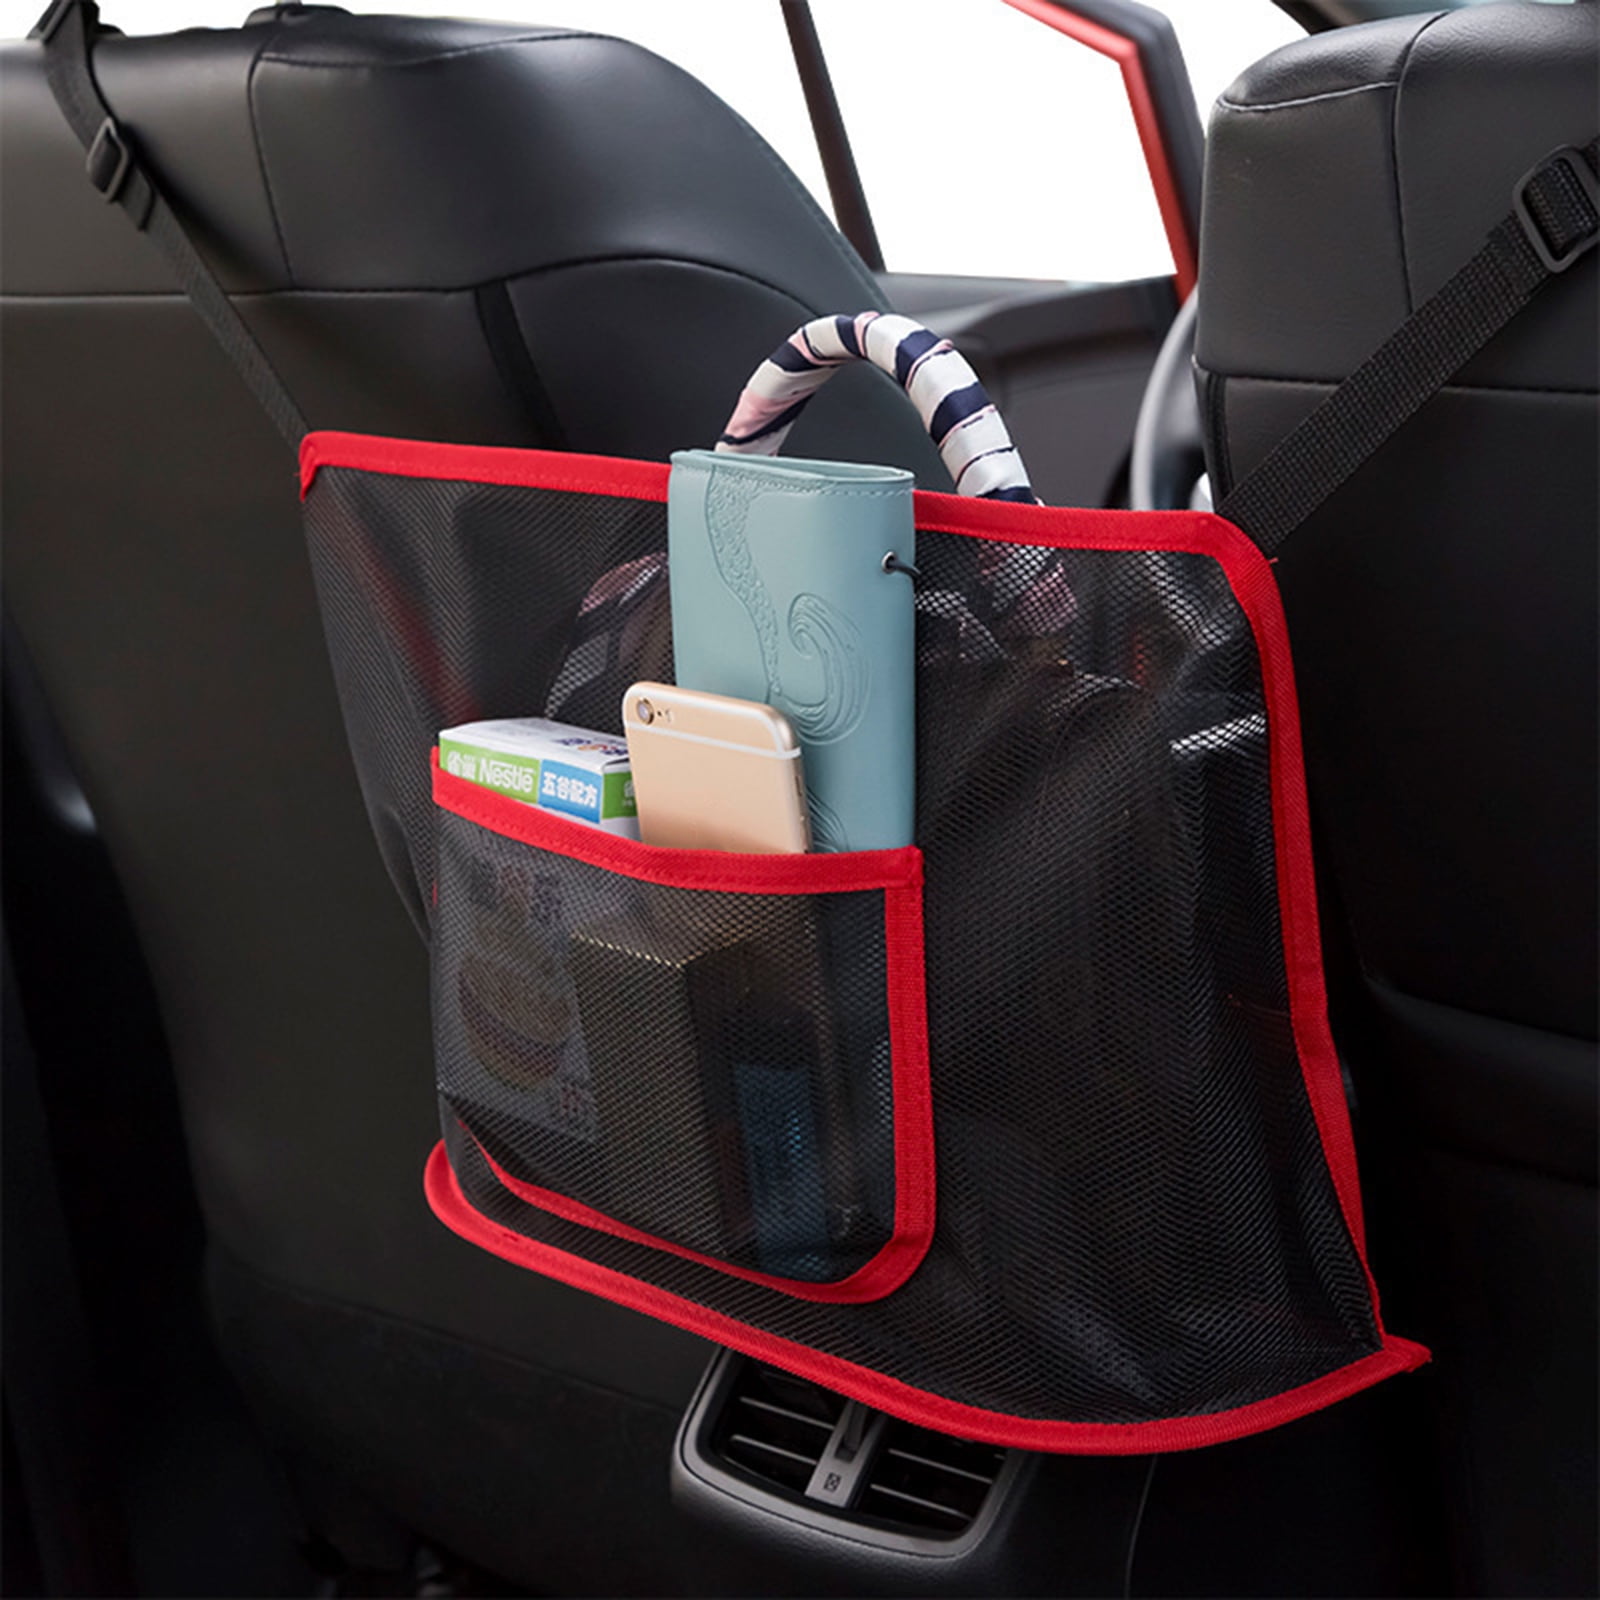 Car Purse Storage & Pocket Holder 3-Layer Car Mesh Organizer Car Net Pocket Handbag Holder Helps as Dog Barrier Too（Black） Handbag Holder Seat Back Net Bag Pocketbook Holder Hammock Car Cache 